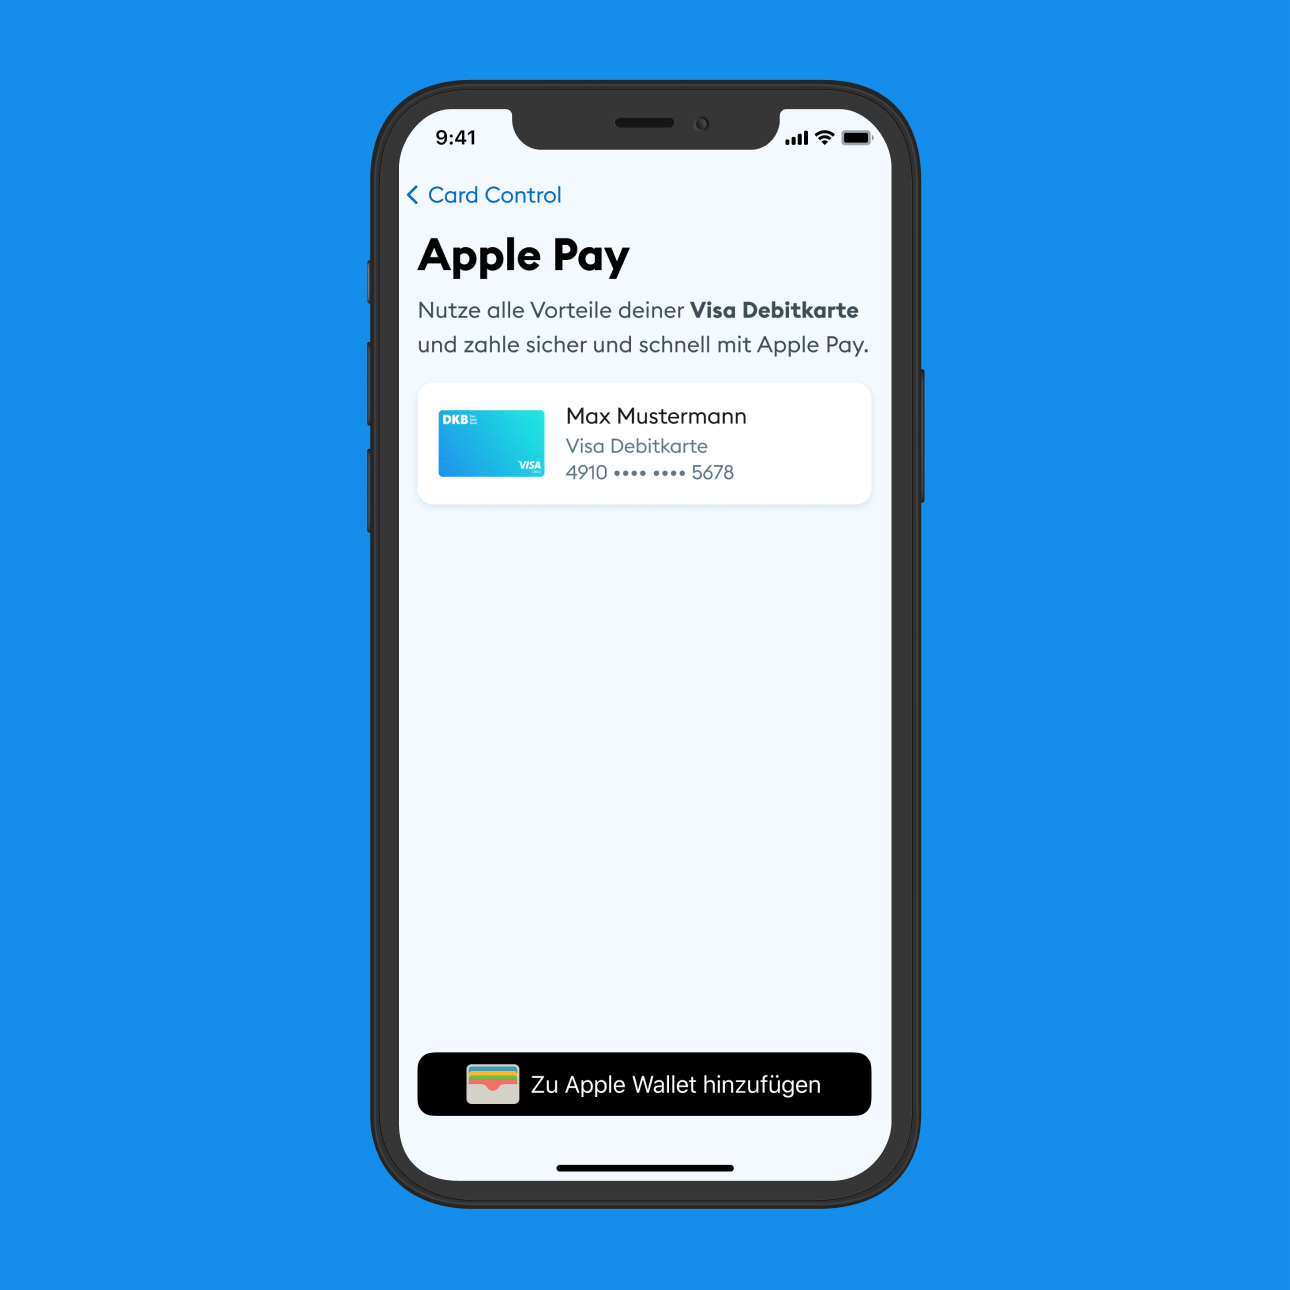 Smartphone zeigt die Card Control Einstellung in der DKB App, dass die Visa Debitkarte nun für Apple Pay aktiviert ist und zum Apple Wallet hinzugefügt werden kann.